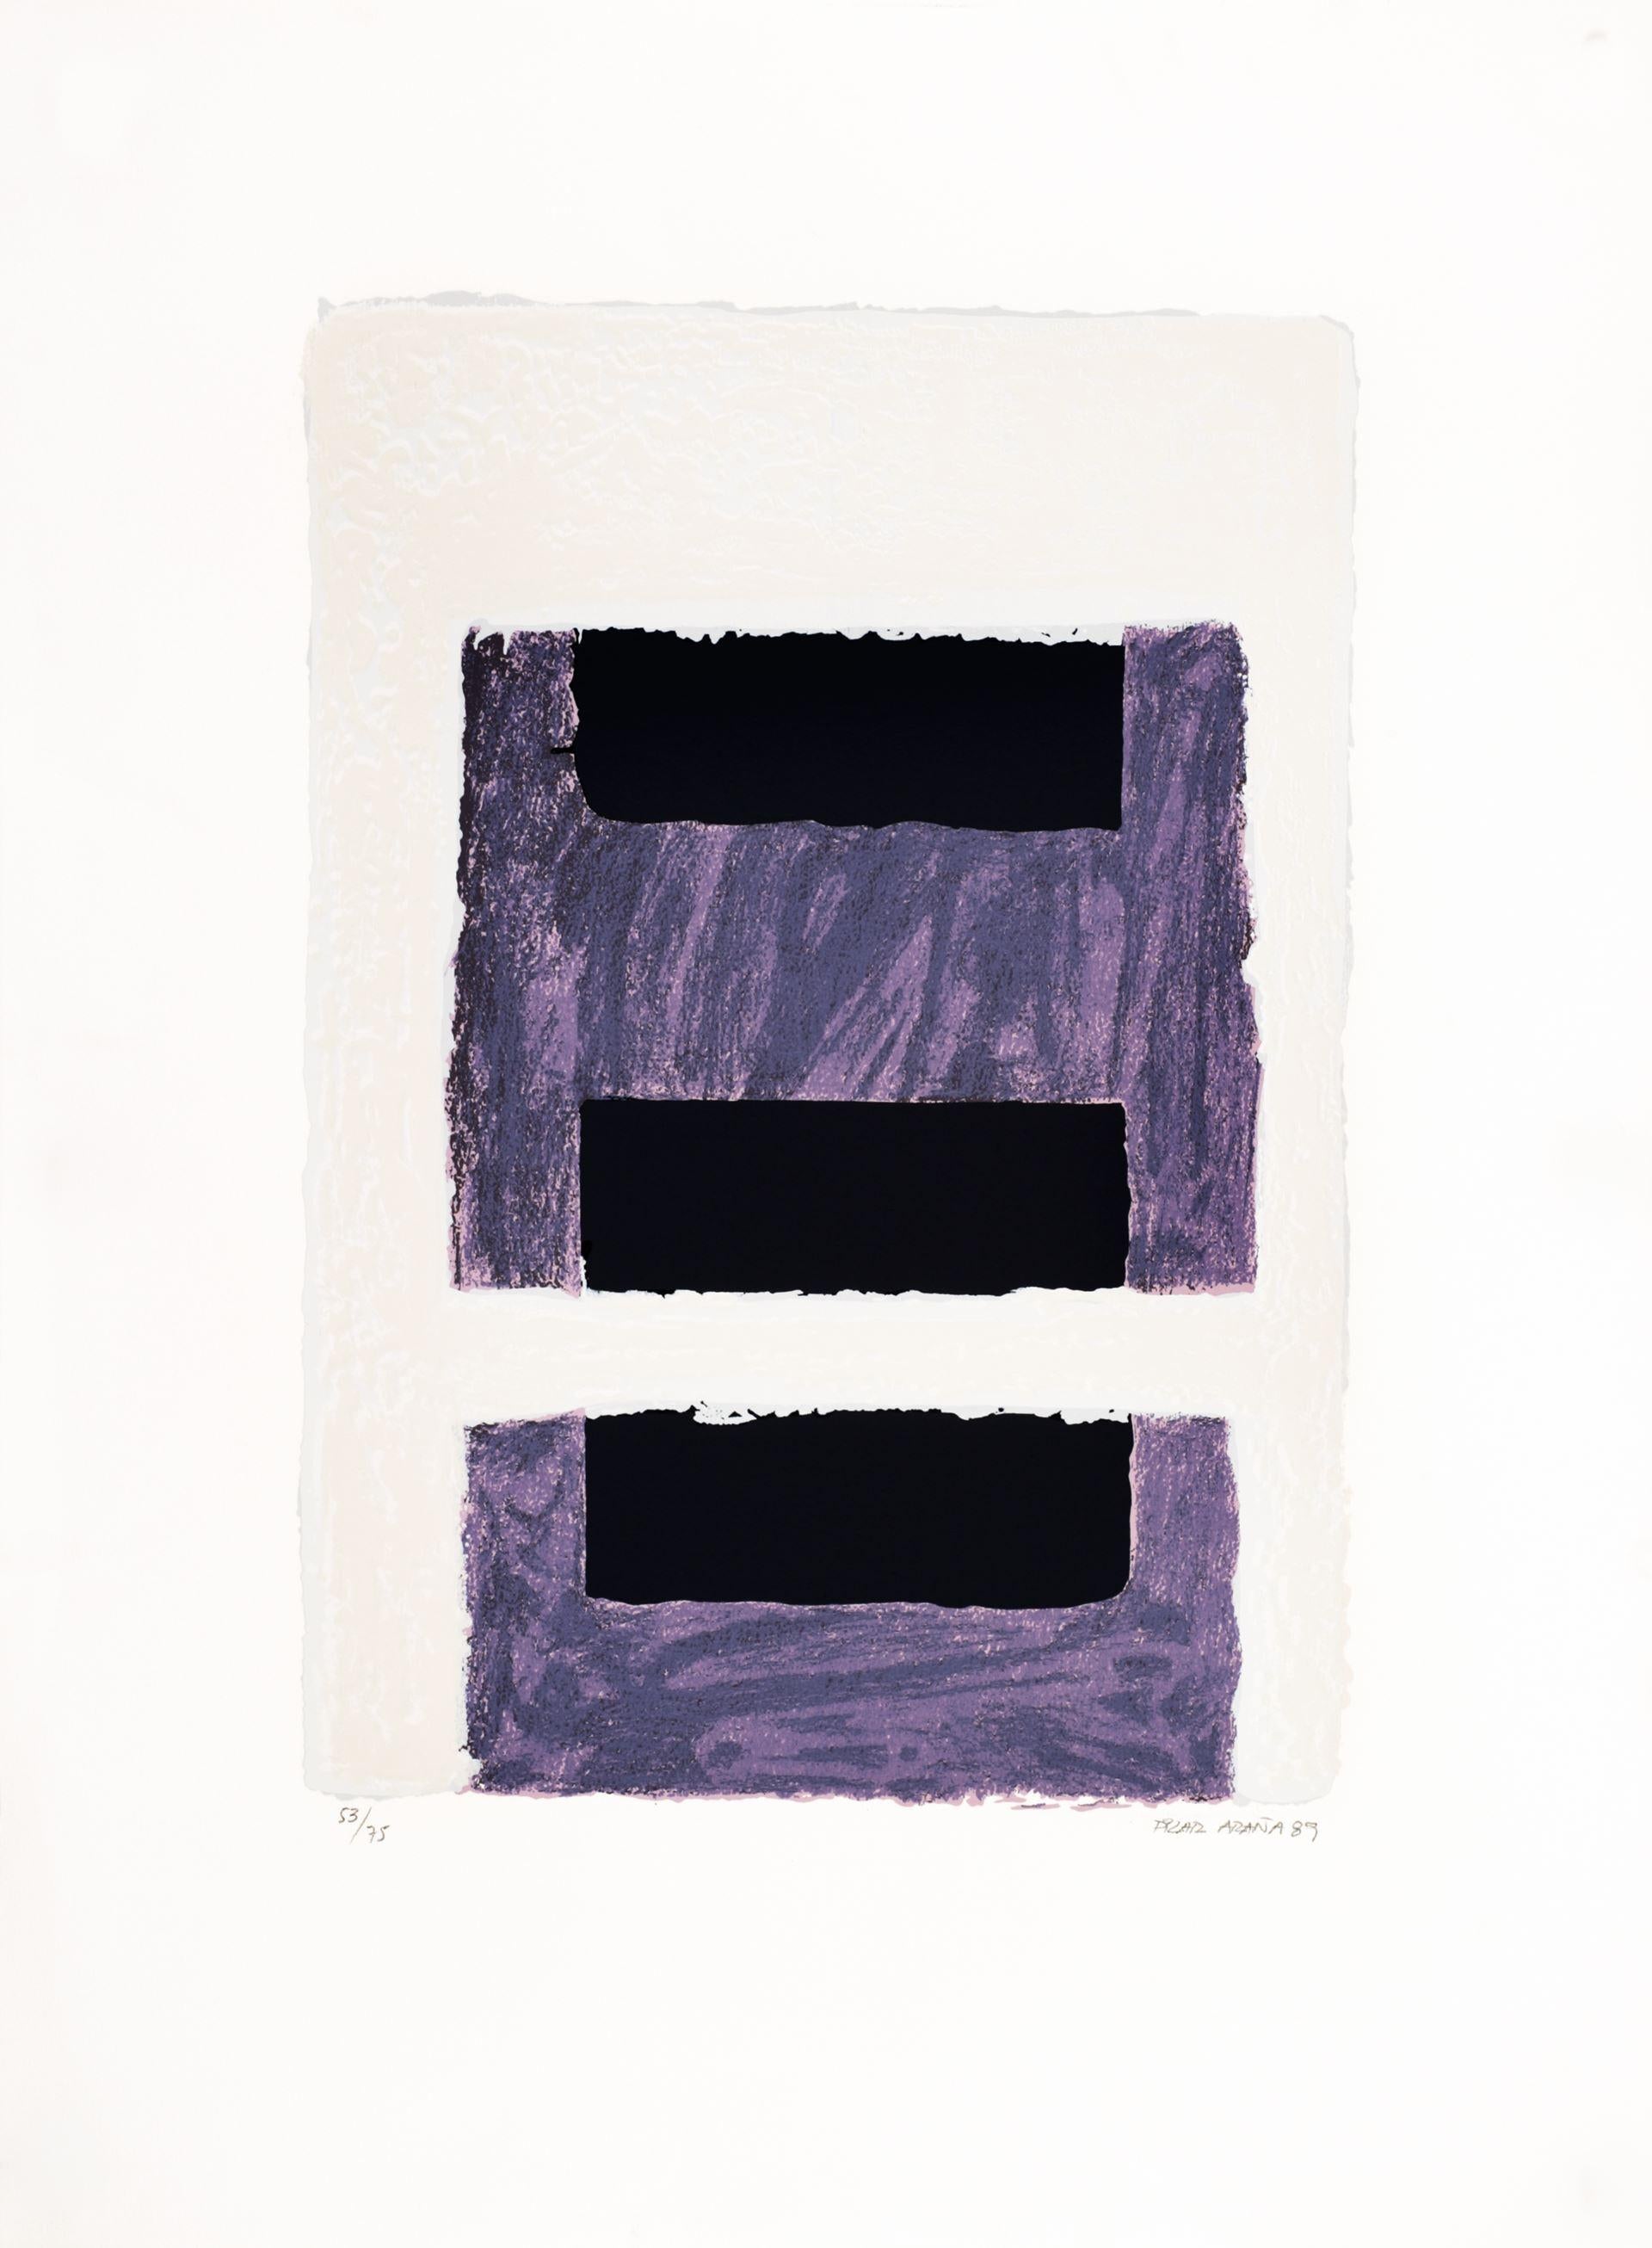 Pilar Araña 
S/T 1", 1989
Siebdruck auf Papier
30 x 22,1 Zoll (76 x 56 cm)
Auflage von 75
Ungerahmt
ID: ARA1190-001-075
Vom Autor handsigniert